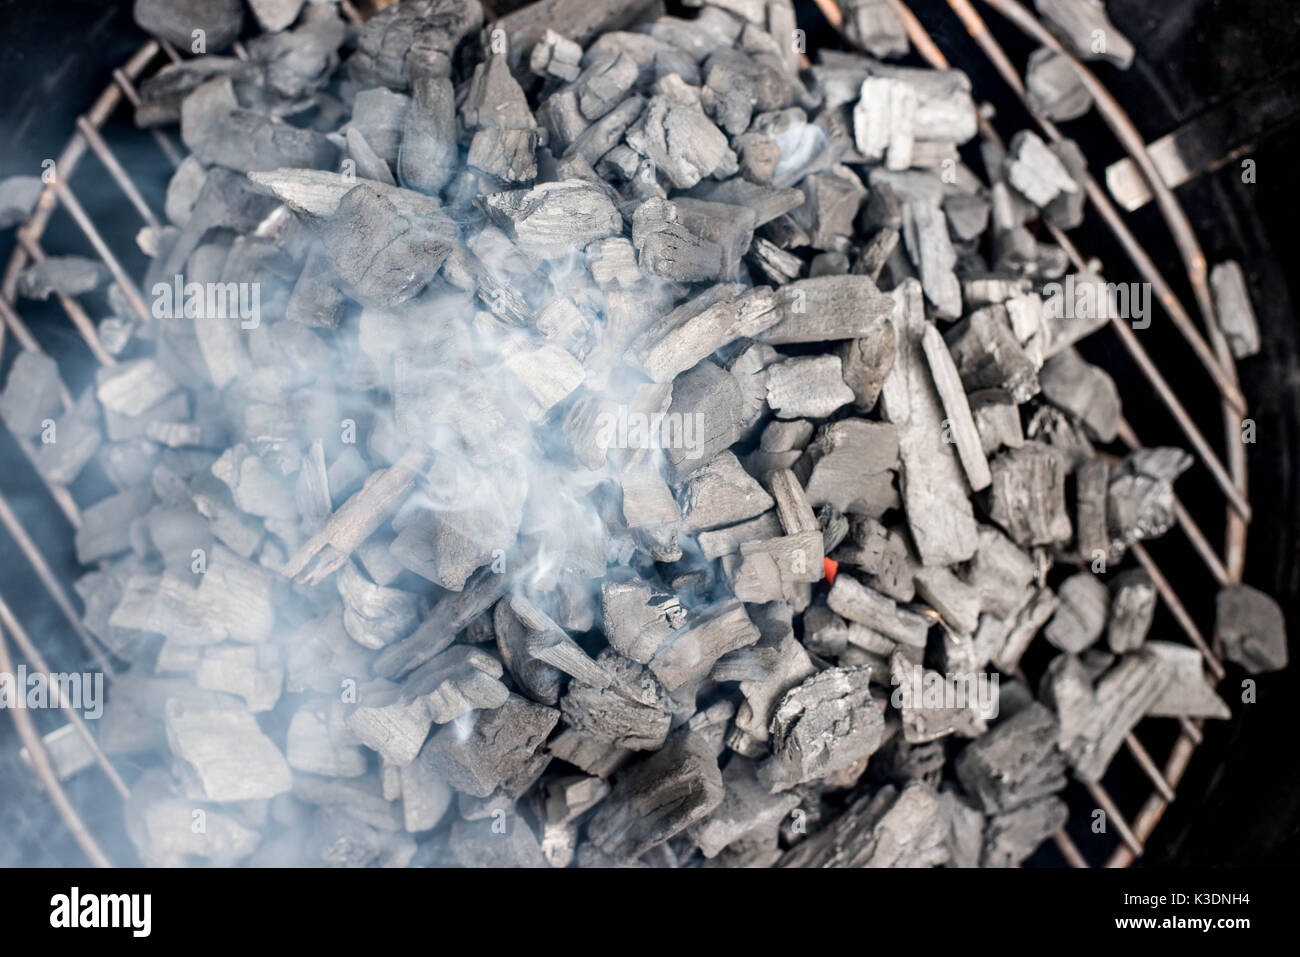 La combustion de charbon pour la cuisson barbecue extérieur Banque D'Images